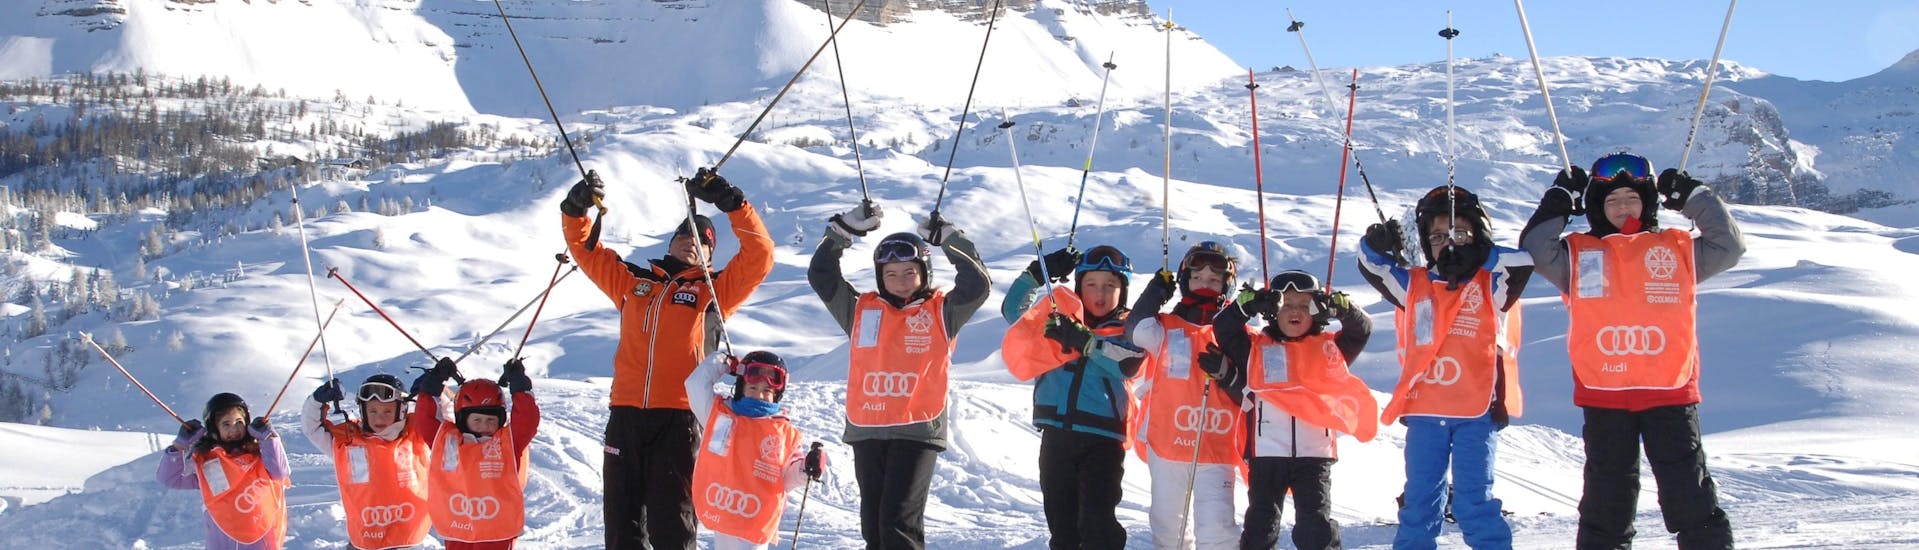 Skilessen voor Kinderen (4-12 jaar) voor Beginners.